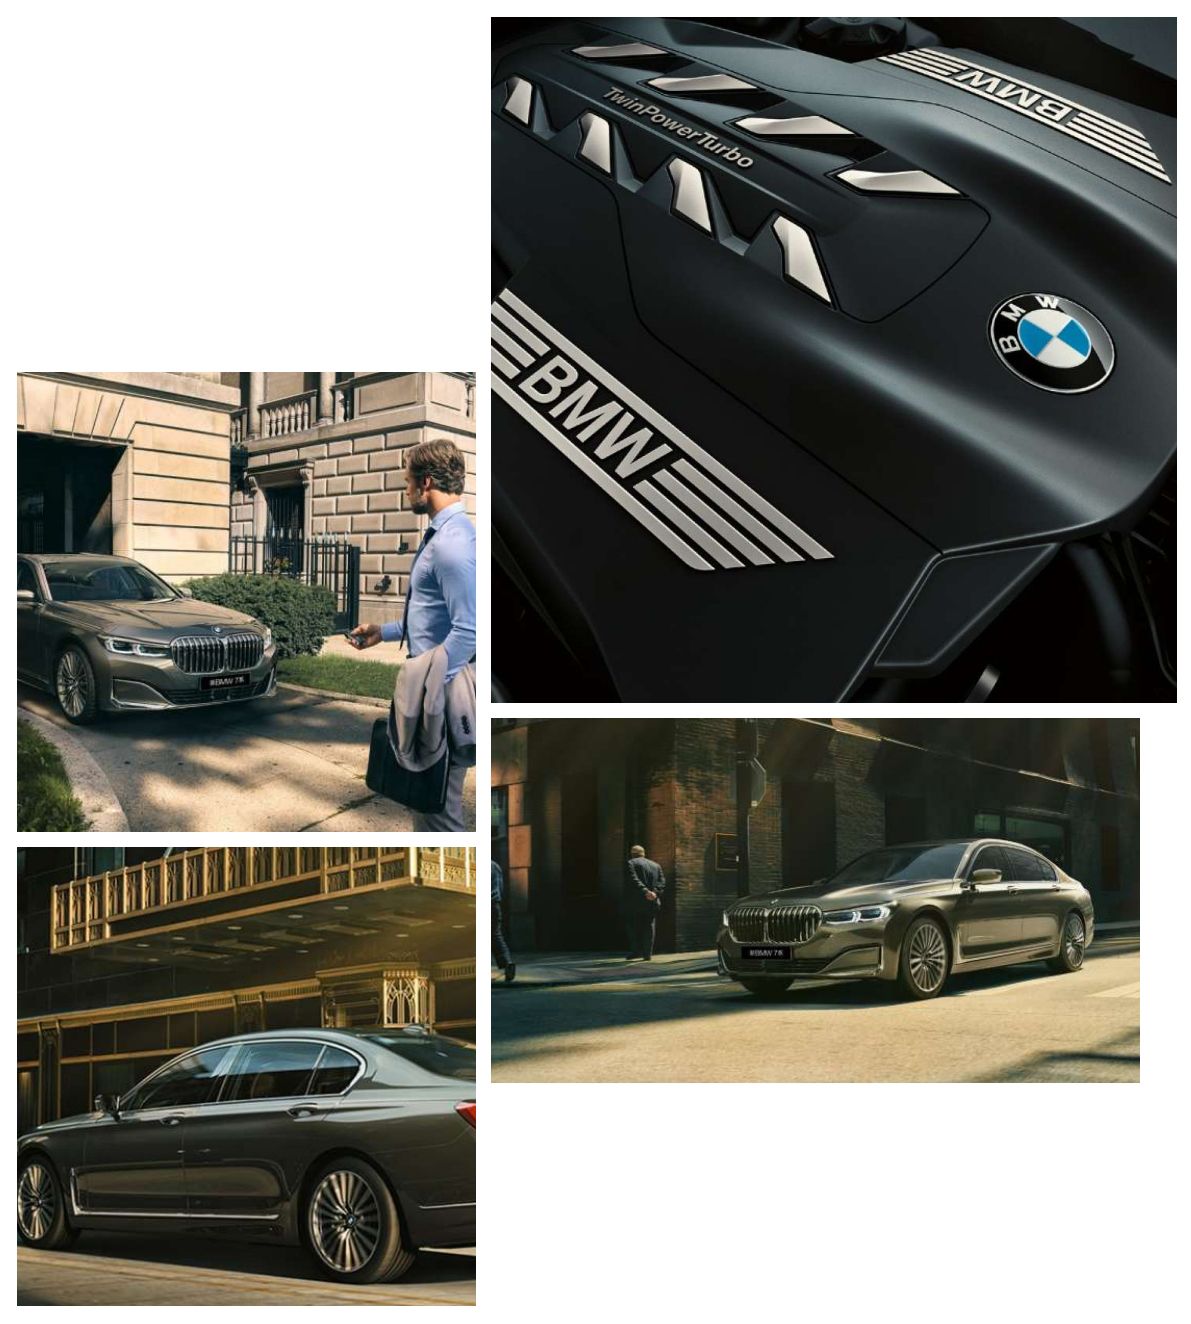 新BMW 7系 任何角度 皆现创新昂然之美